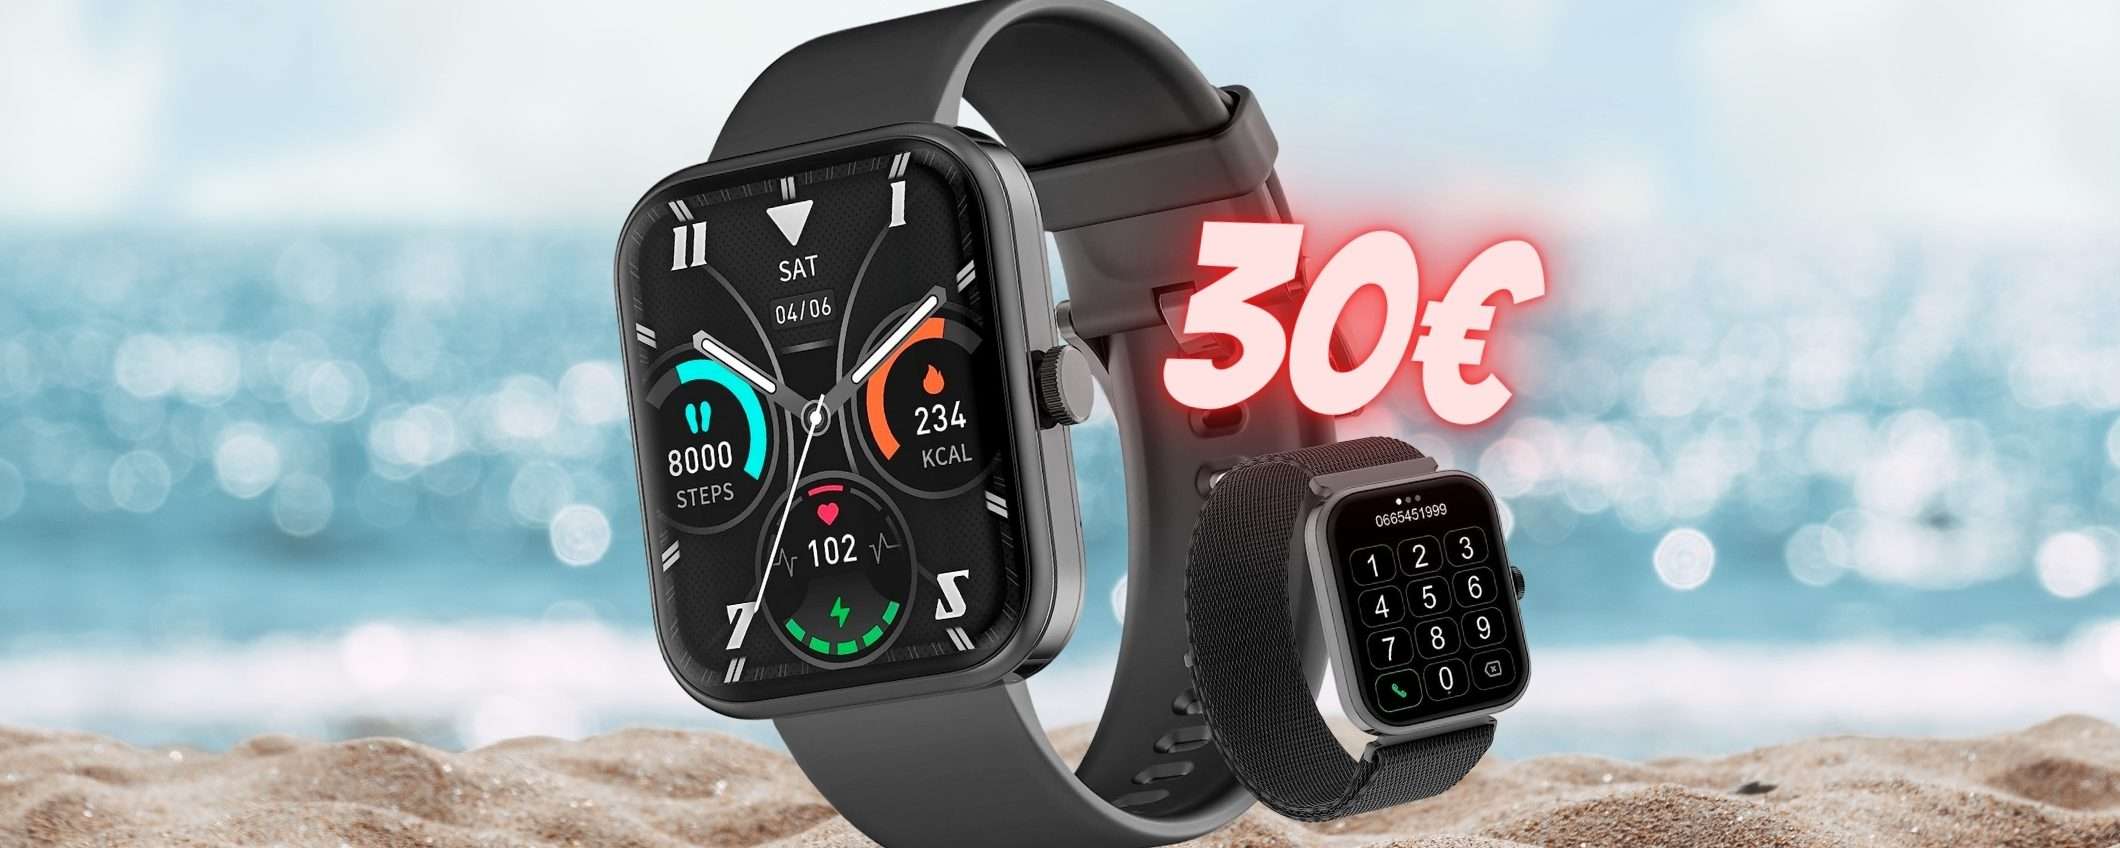 Smartwatch con chiamate Bluetooth a soli 30€, AFFARE unico